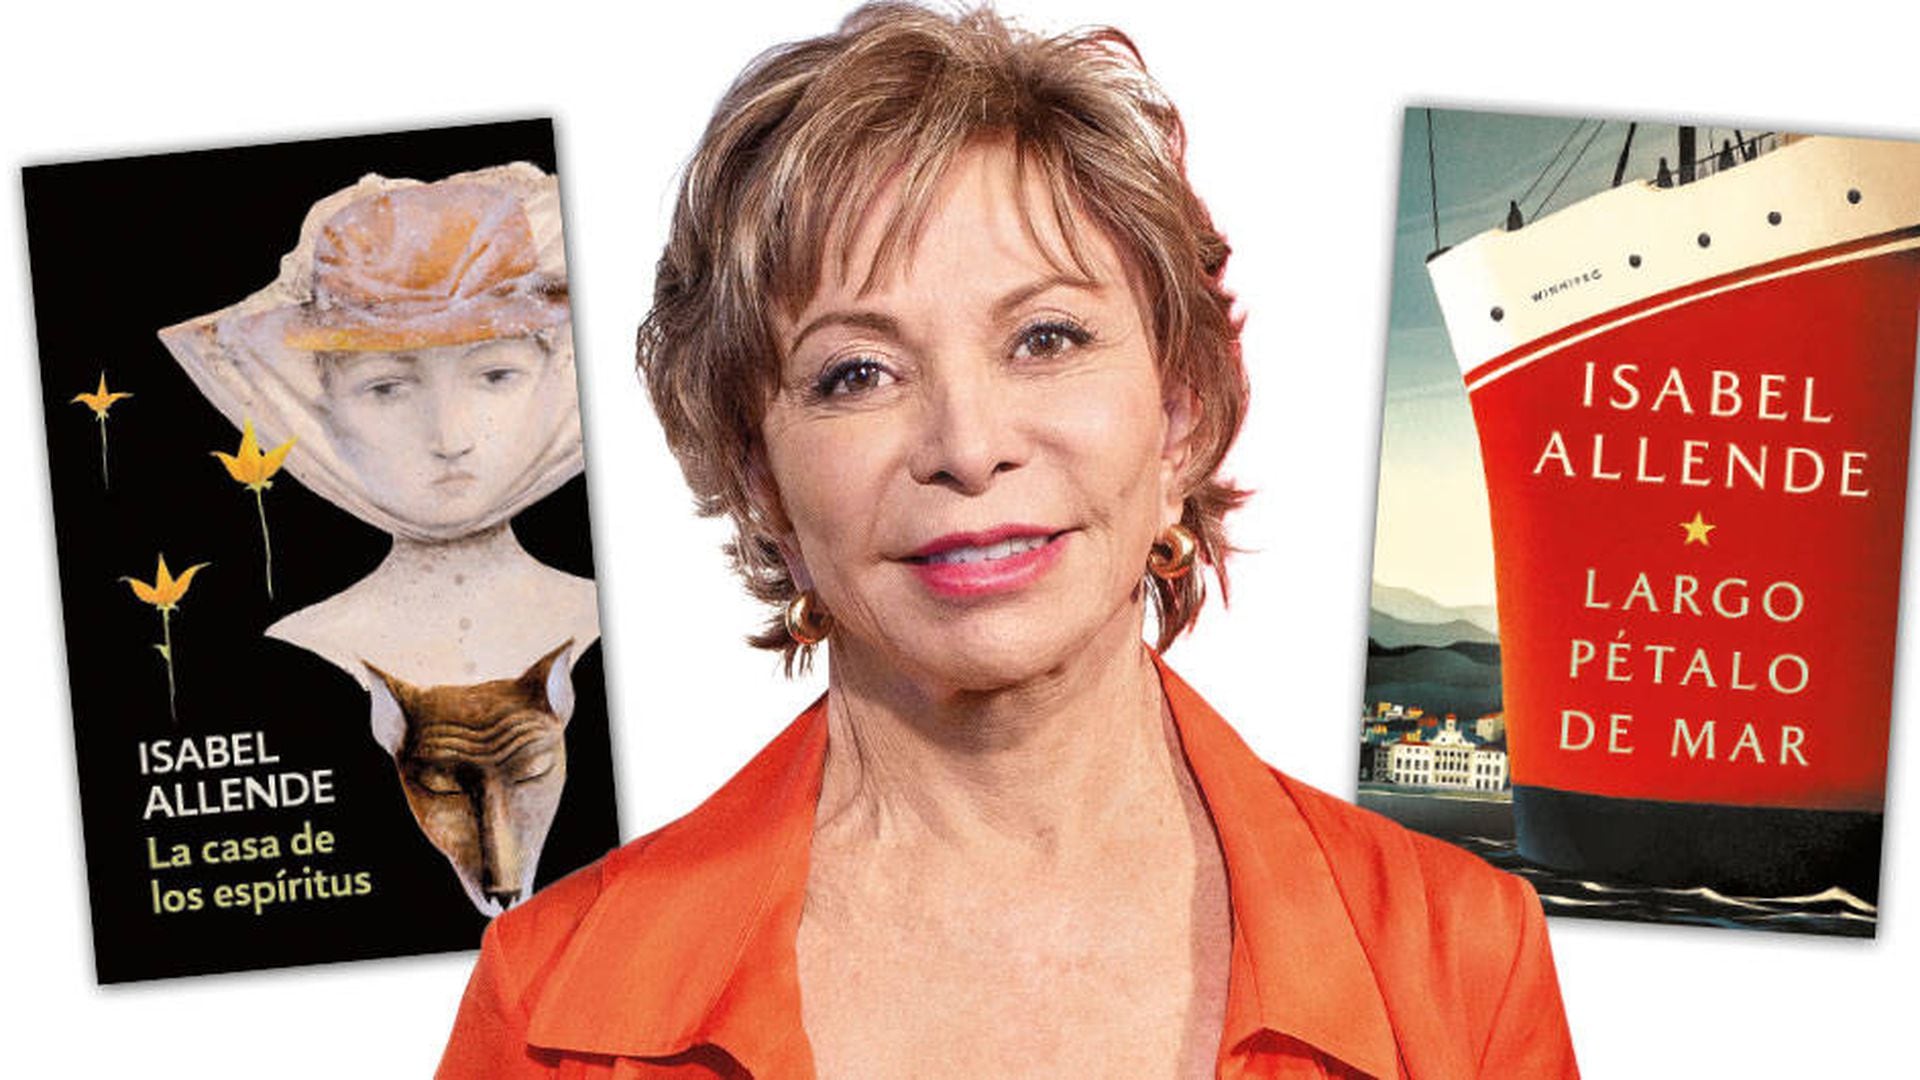 Isabel Allende, la escritora que más libros en español ha vendido, habla de 'Largo pétalo de mar'